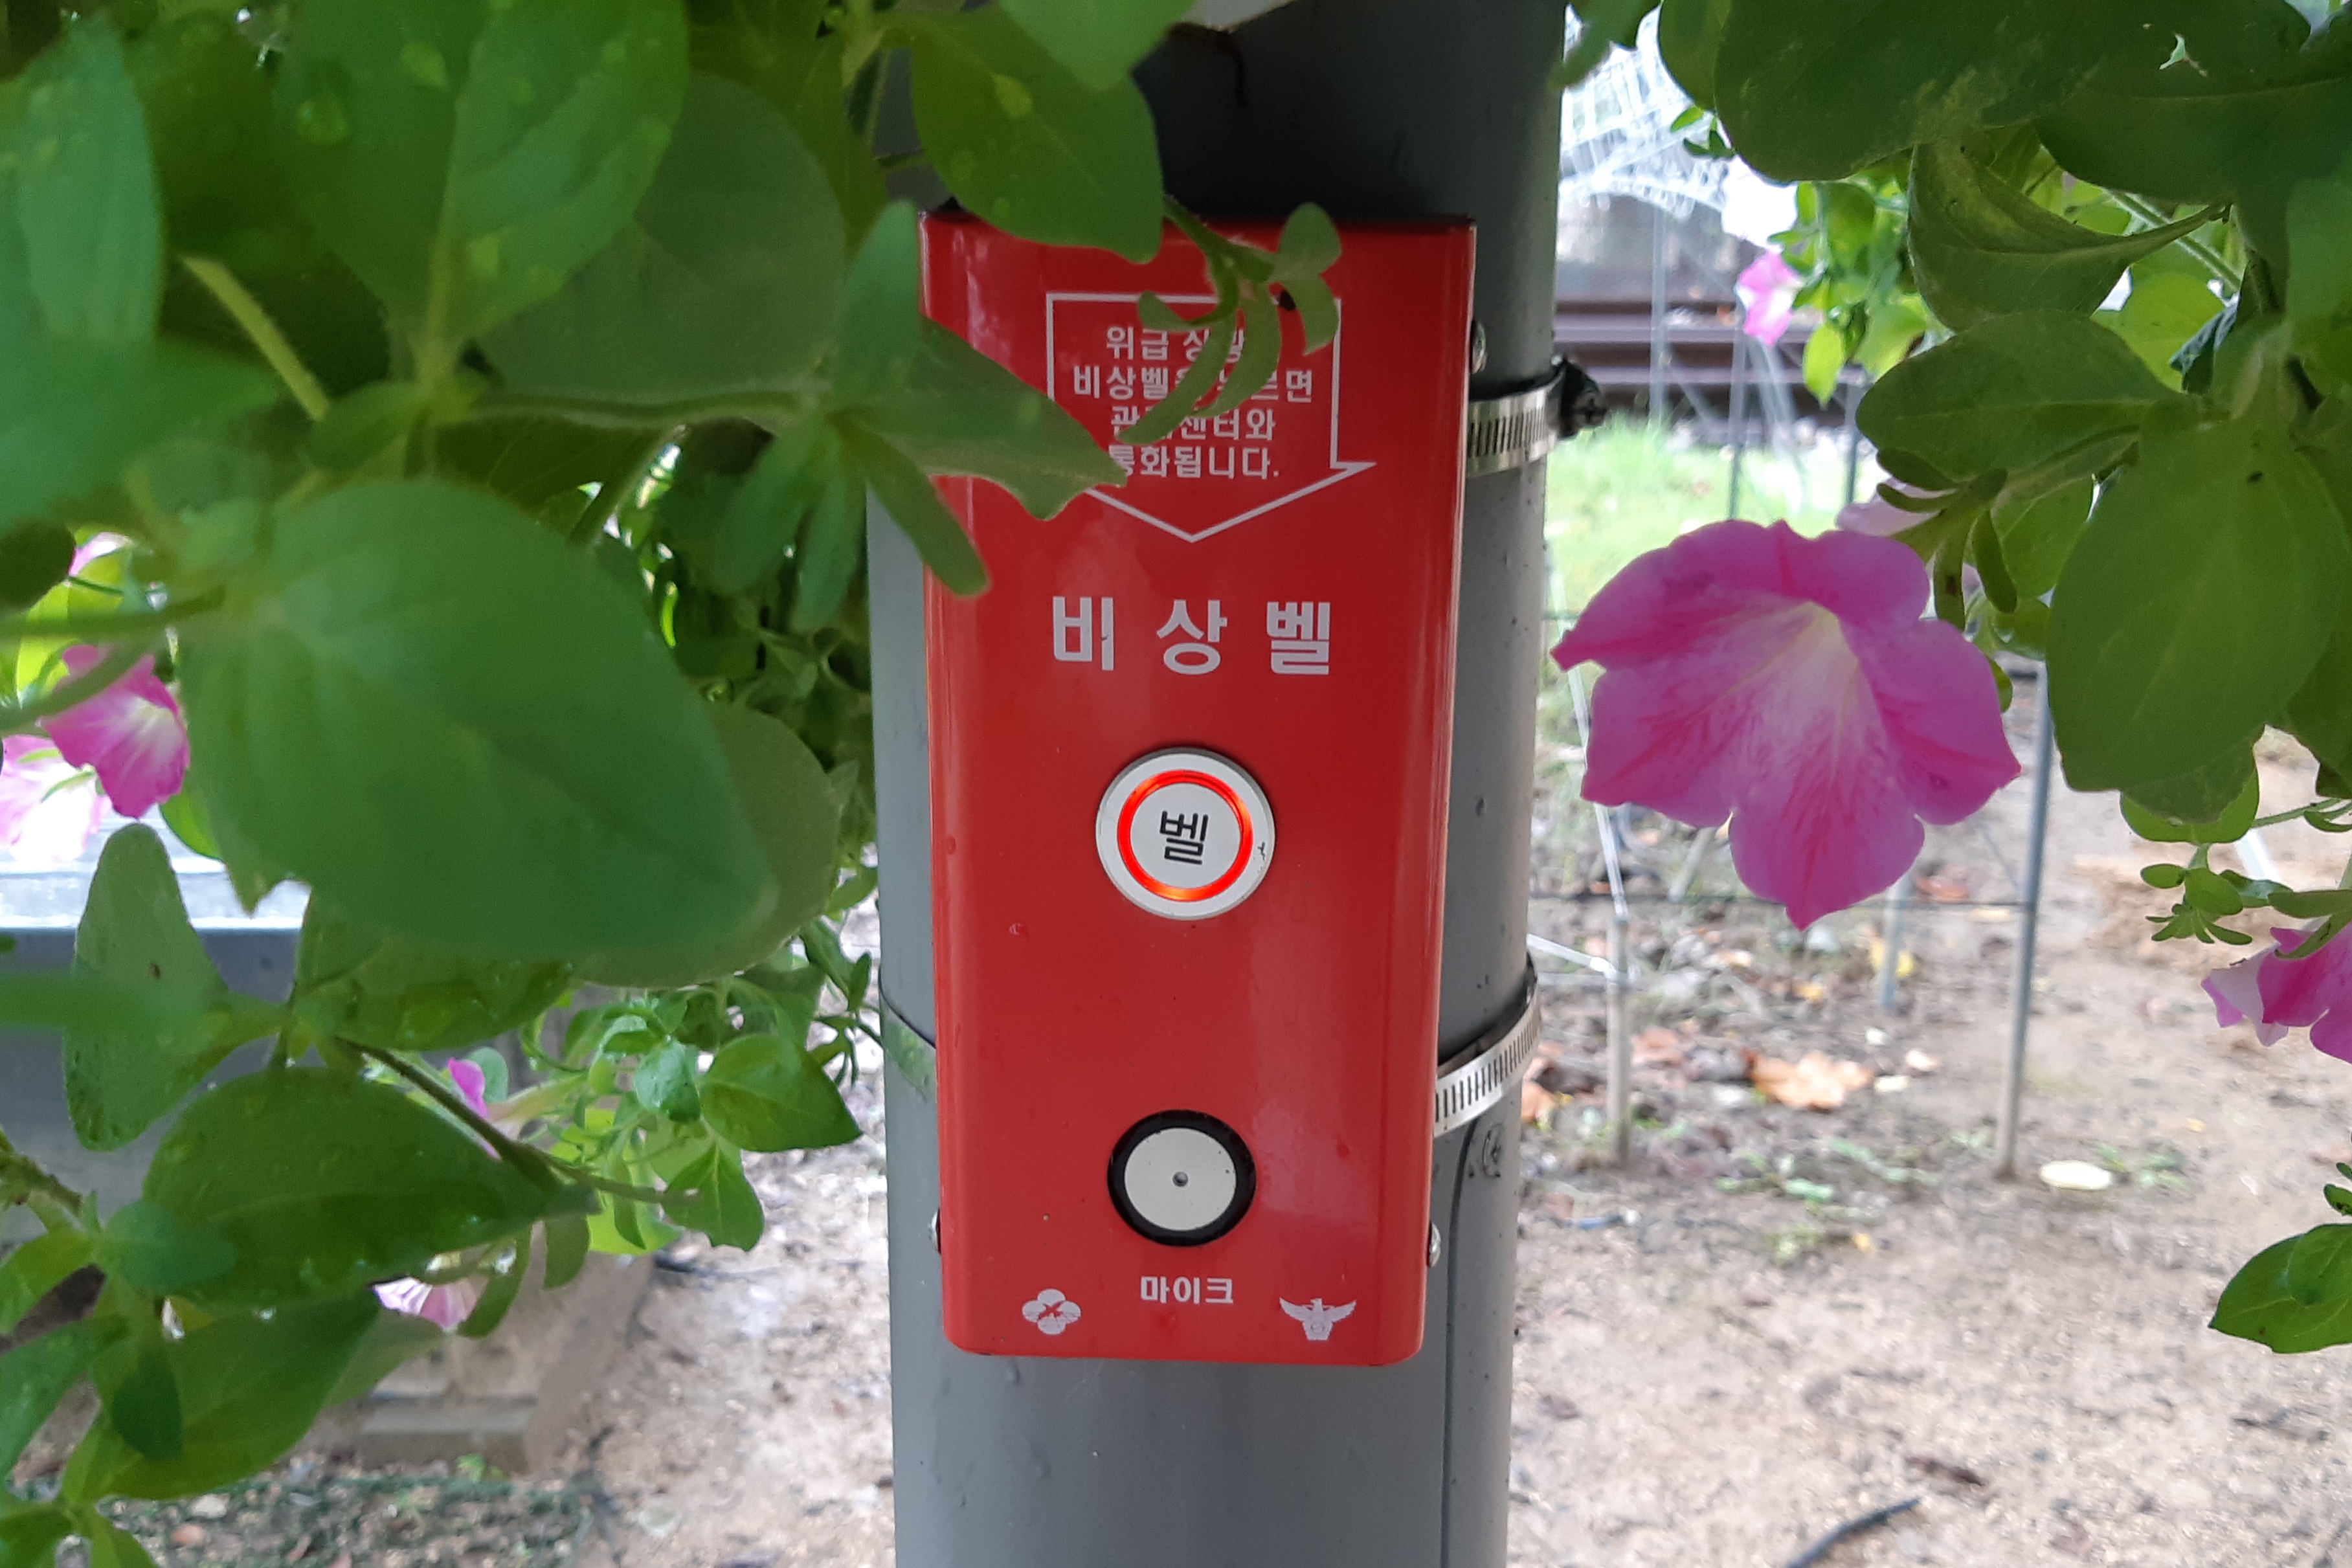 Information board/ Information desk 0 : Emergency bells installed in Hwarangdae Railroad Park